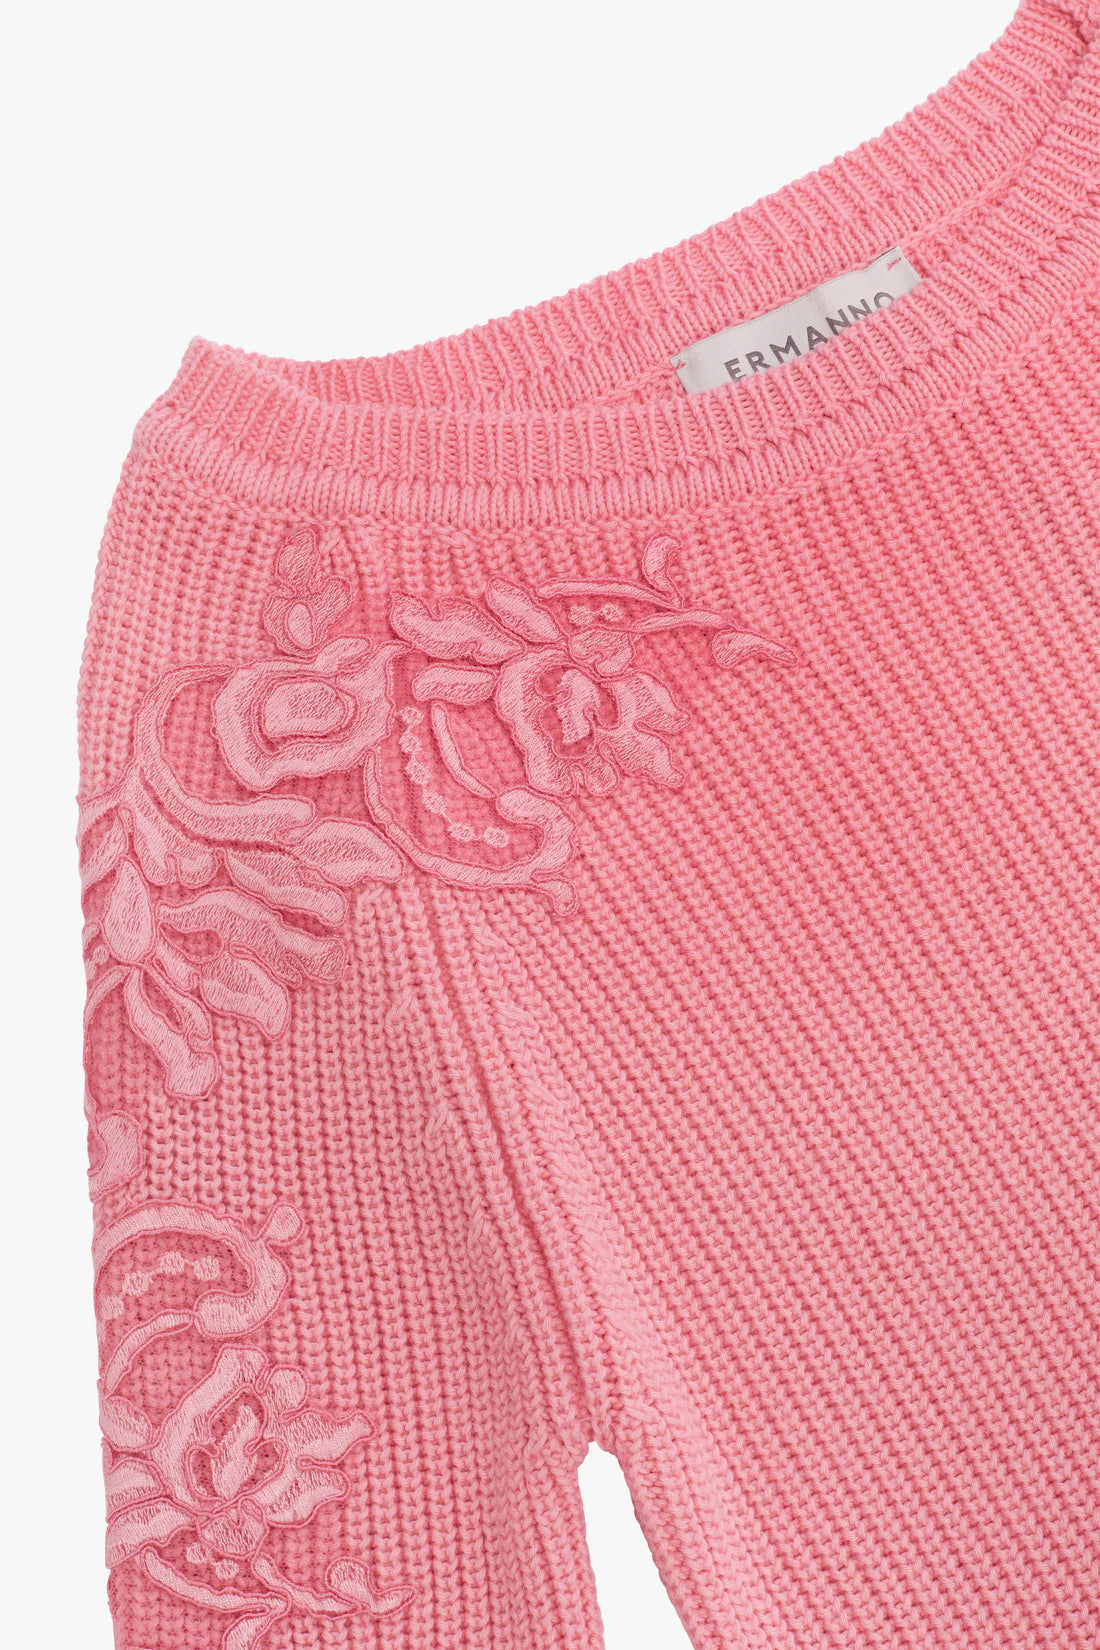 Lace-adorned jumper